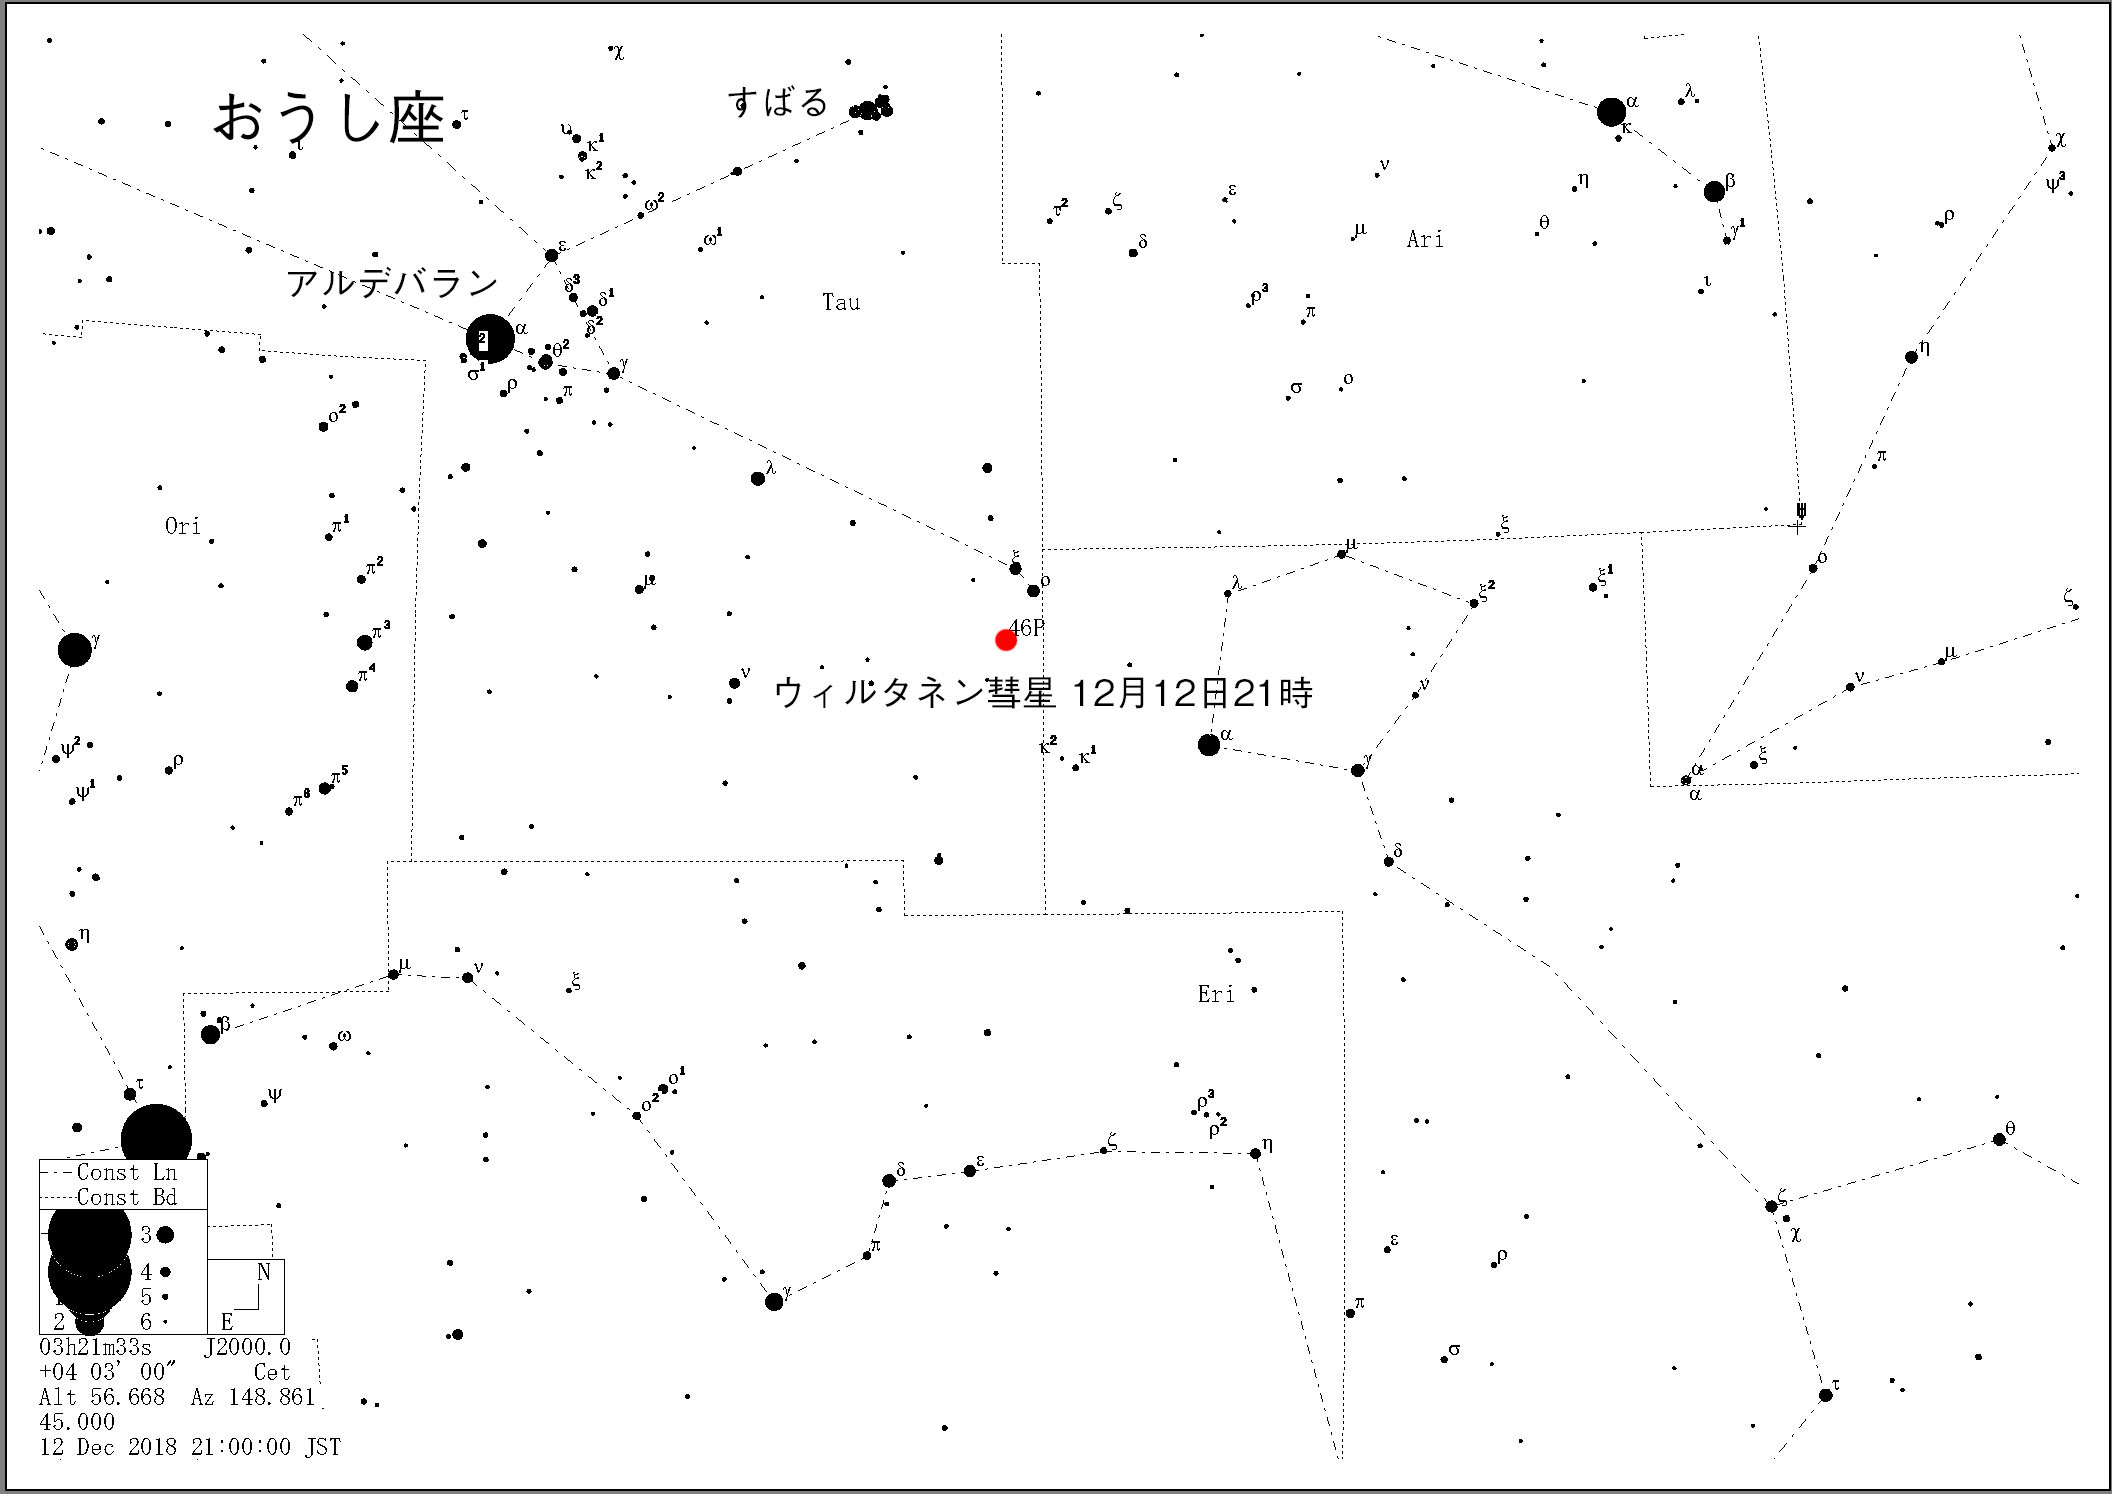 ウィルタネン彗星の星図 12月16日 宙ガールの観測会とイベント情報